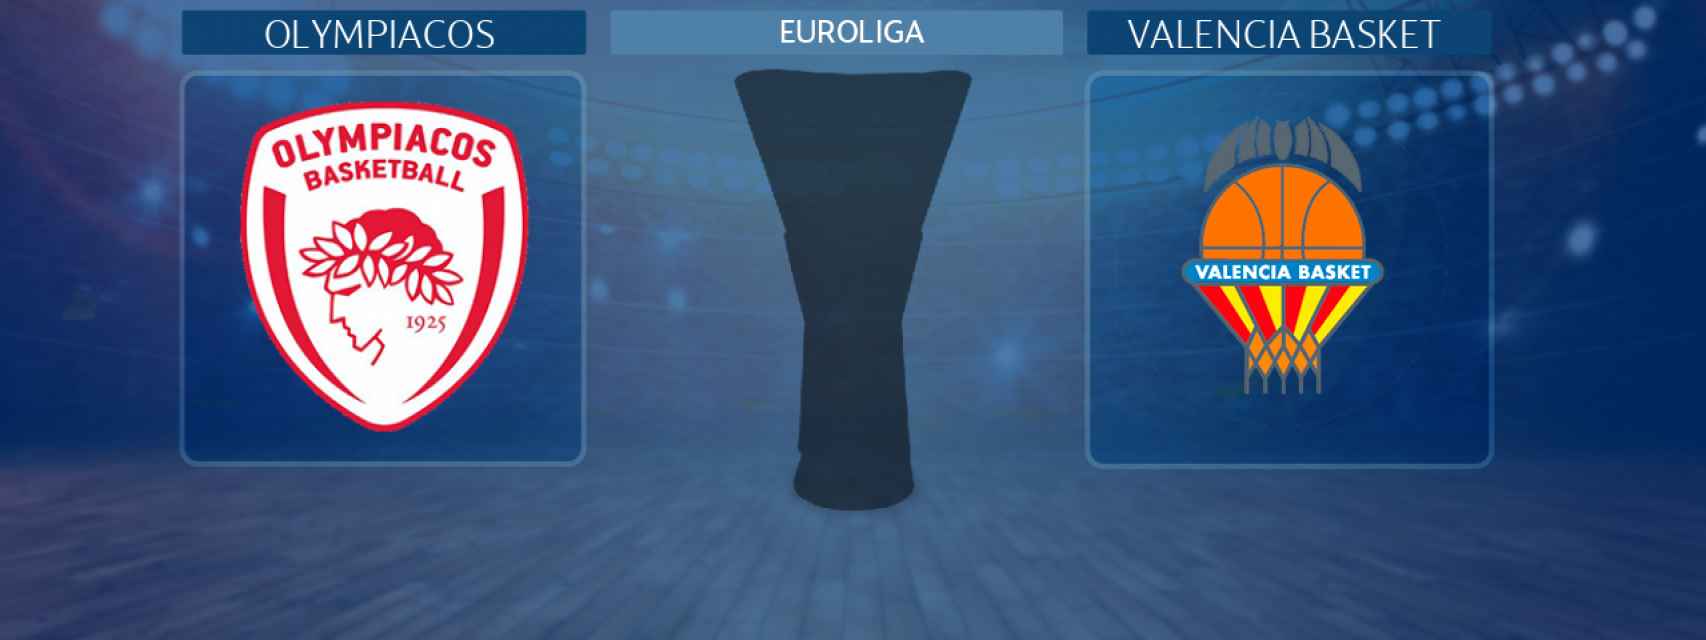 Olympiacos - Valencia Basket, partido de la Euroliga